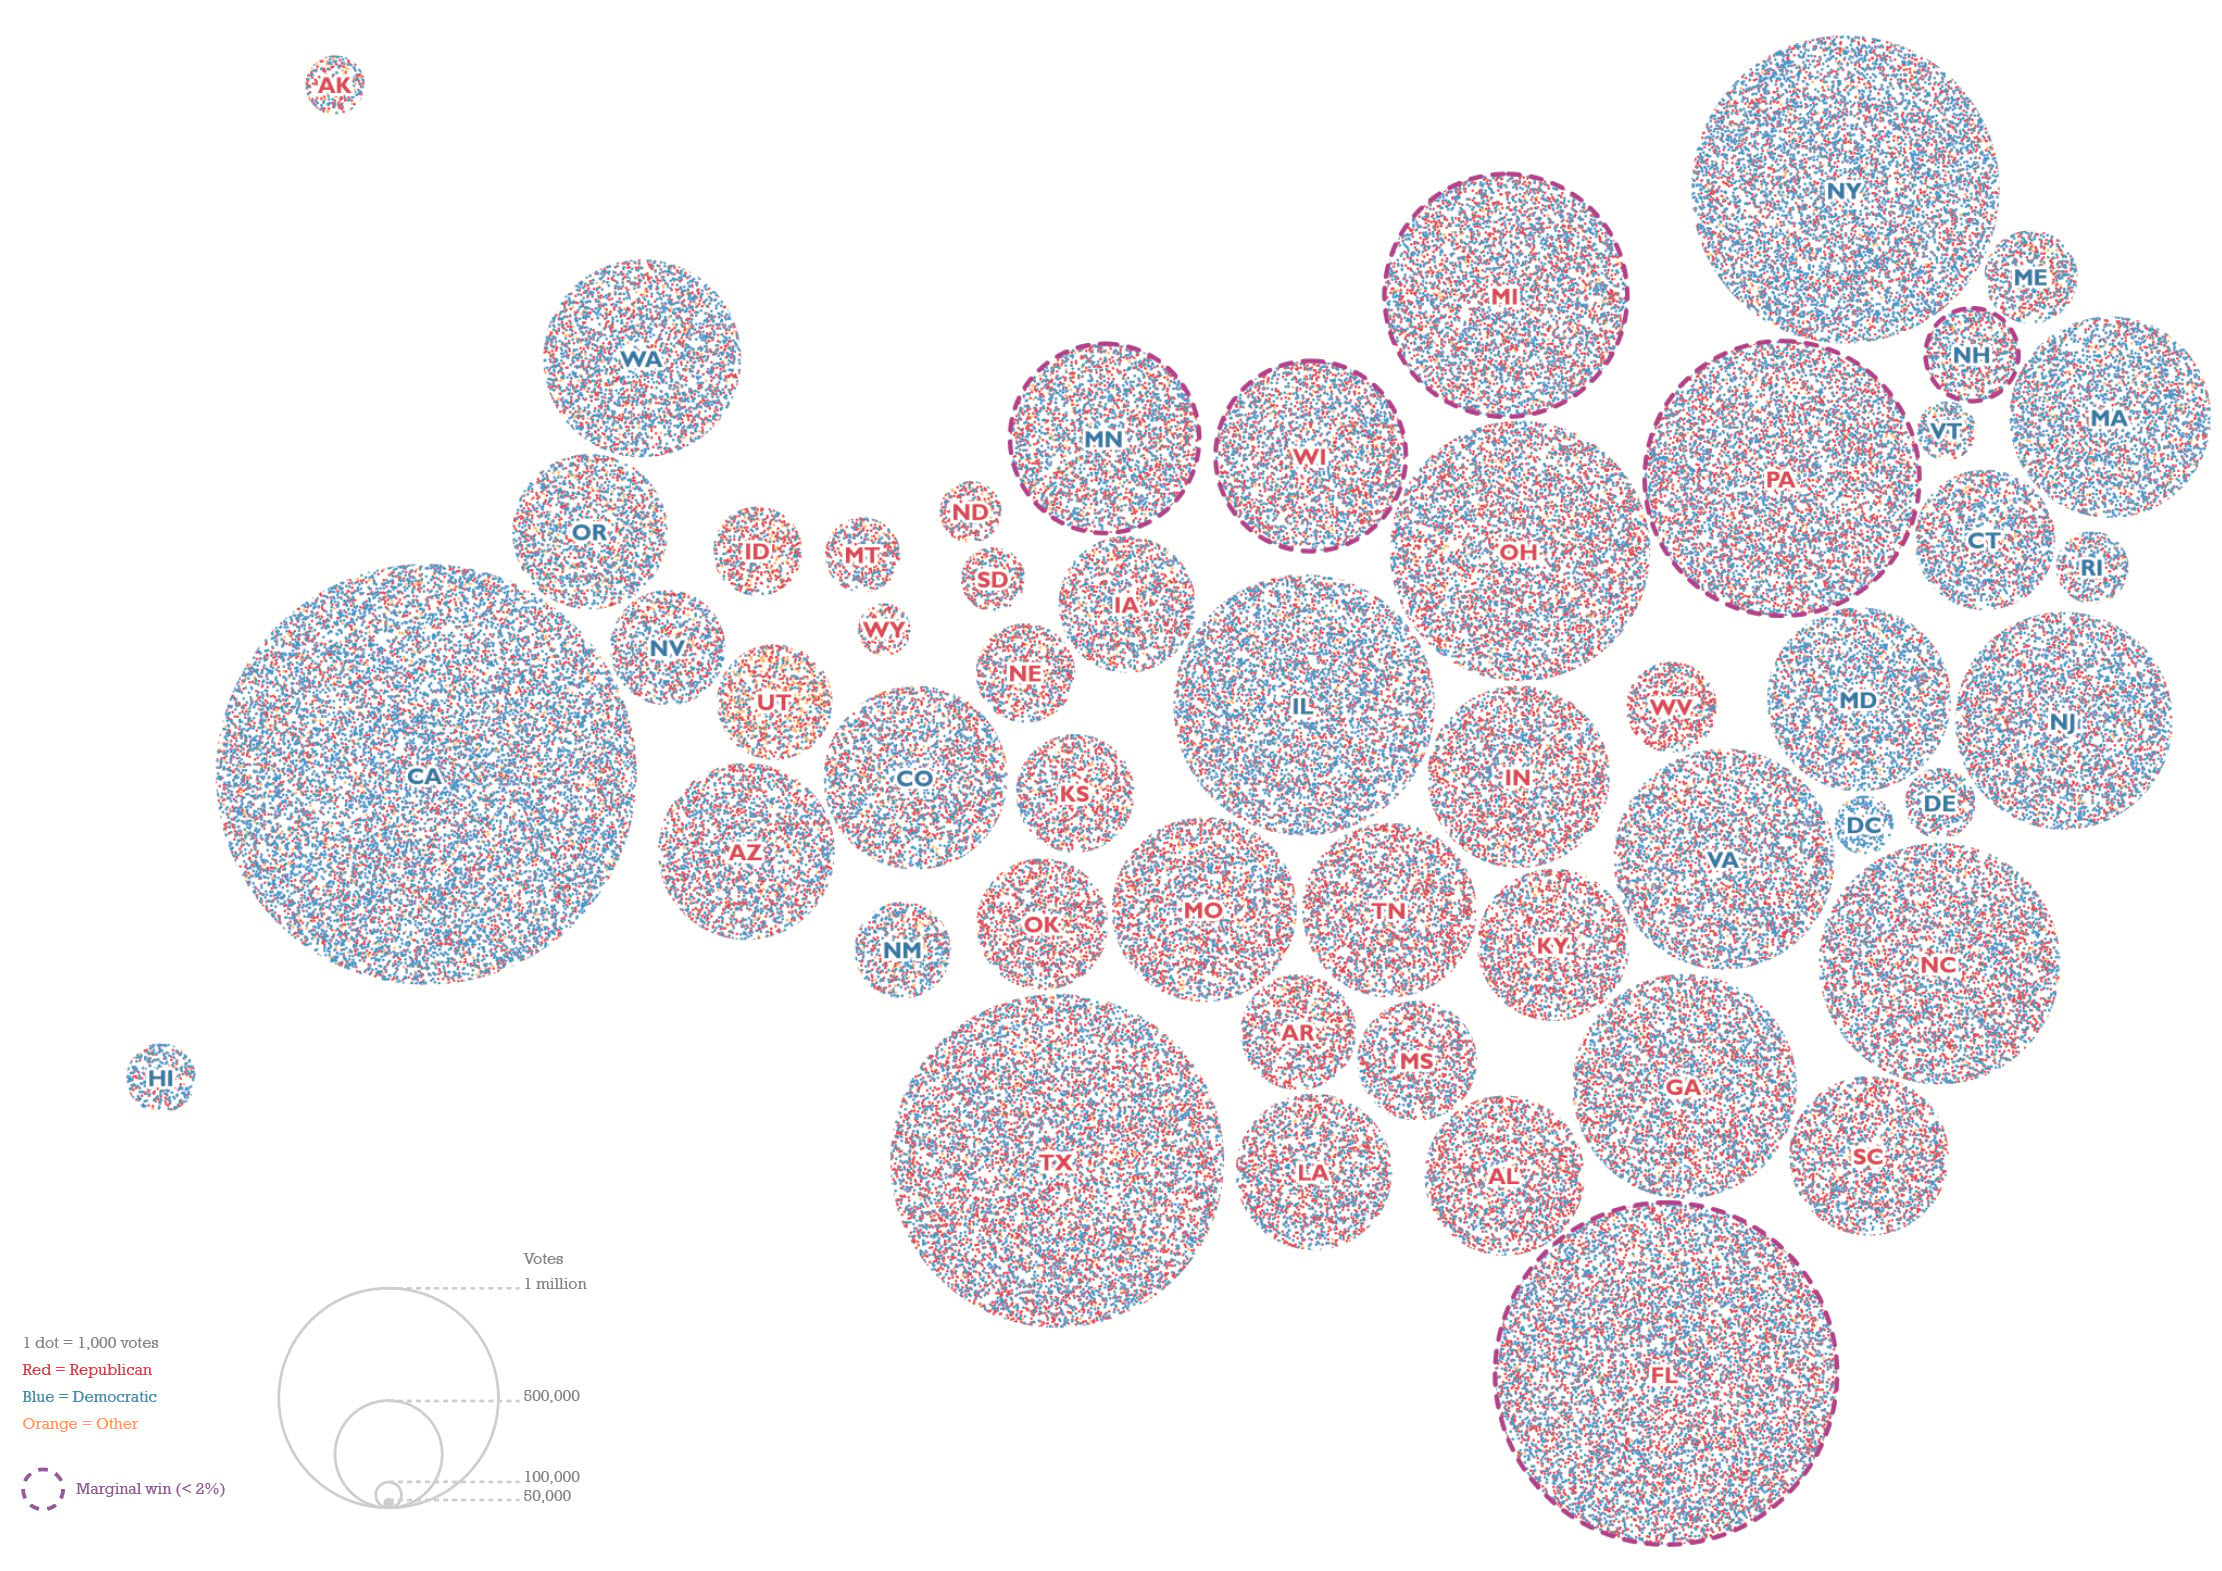 dot density Dorling cartogram of US election results